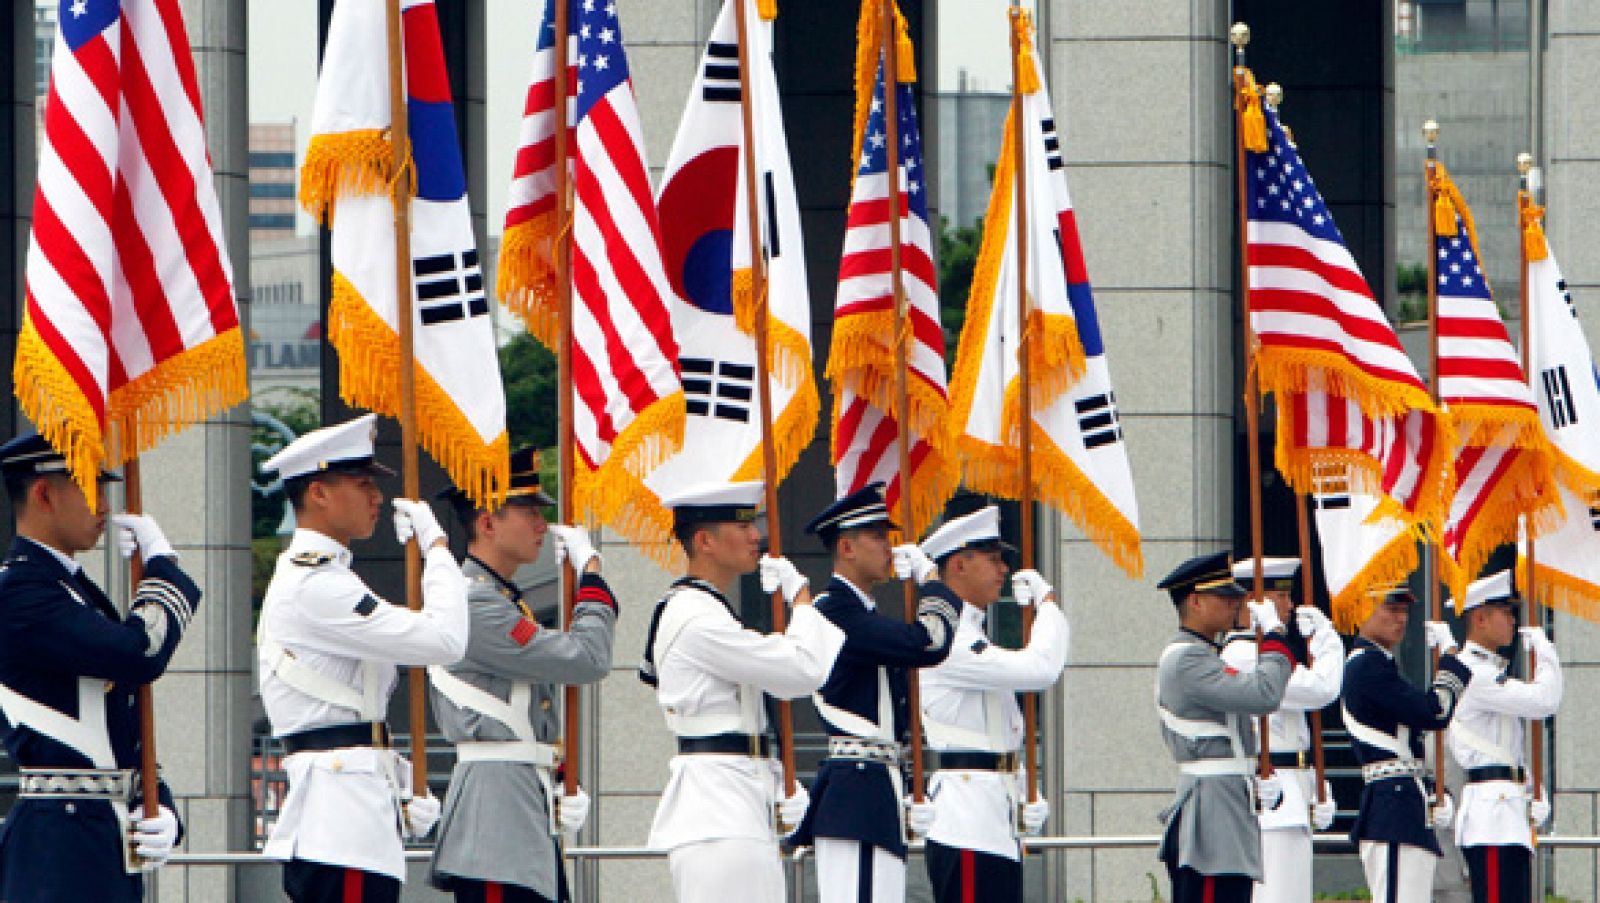 Las banderas de EE.UU. y Corea del Sur presidieron la entrada a la reunión entre ambos países que tuvo lugar en Seúl.